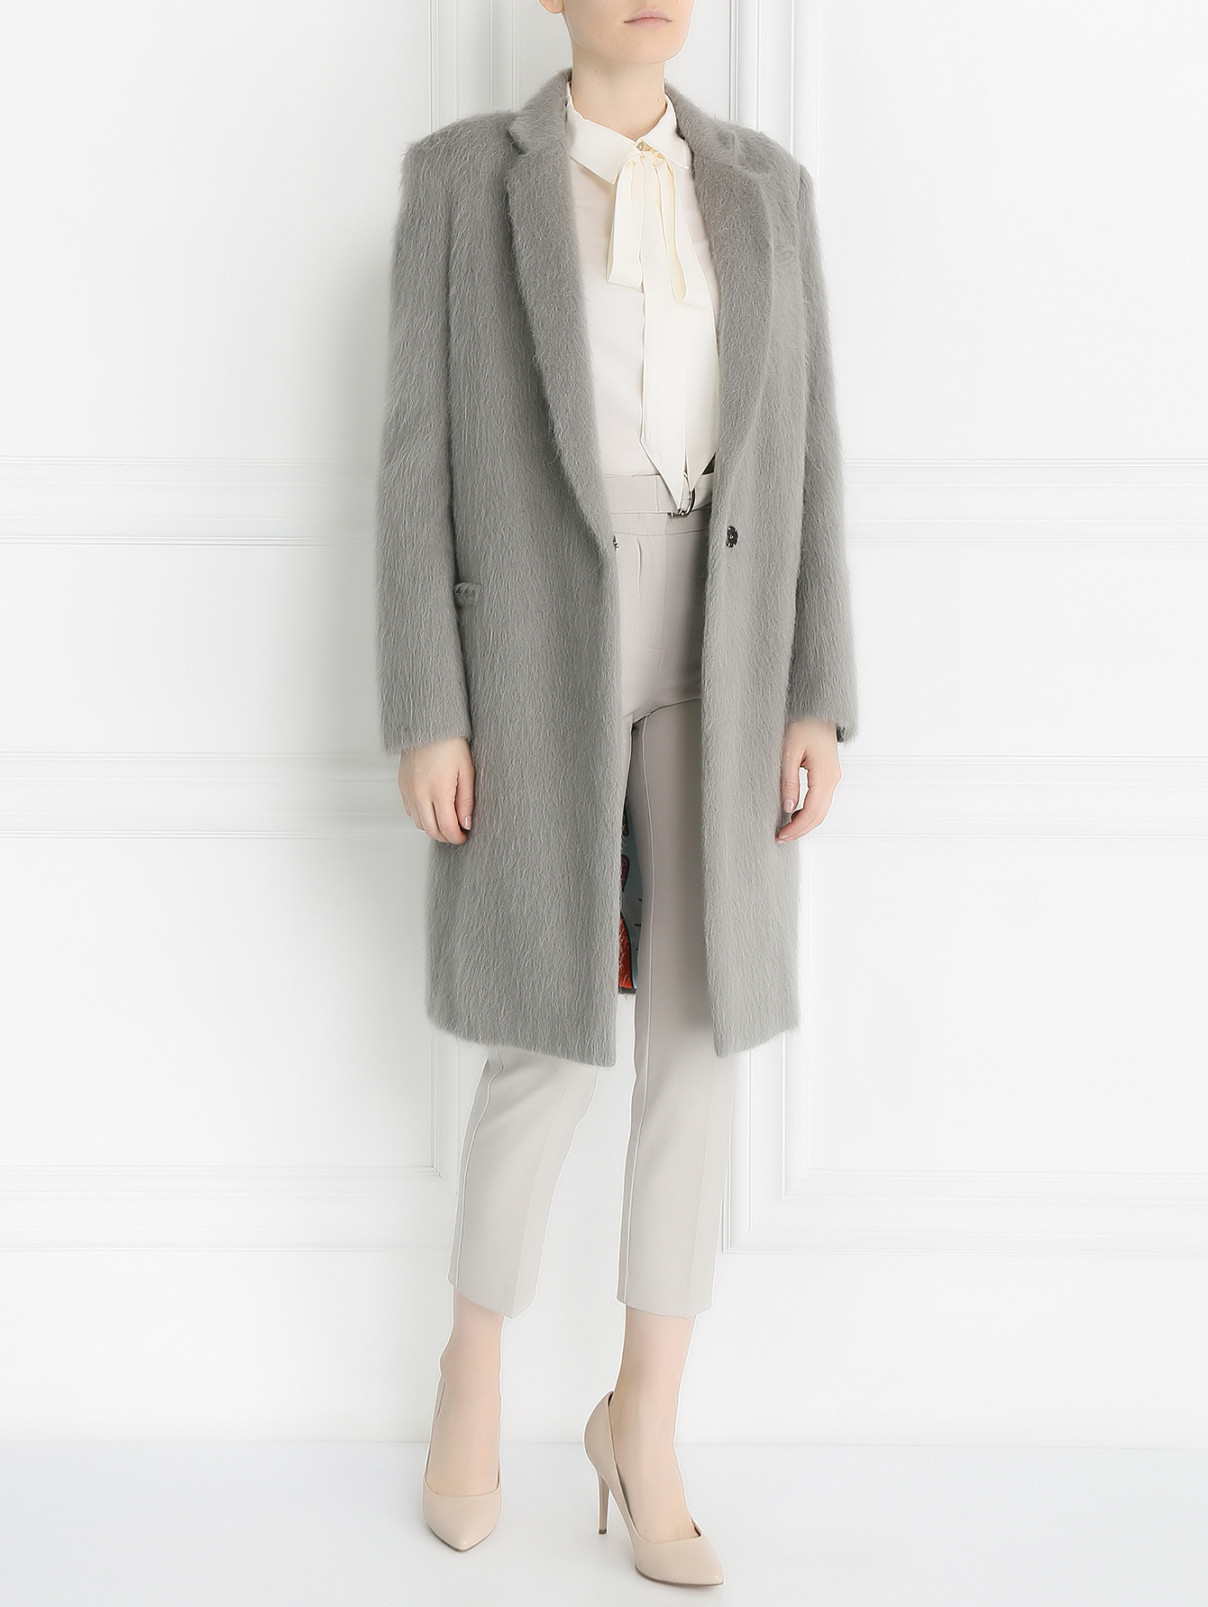 Пальто из шерсти, мохера и альпаки Femme by Michele R.  –  Модель Общий вид  – Цвет:  Серый